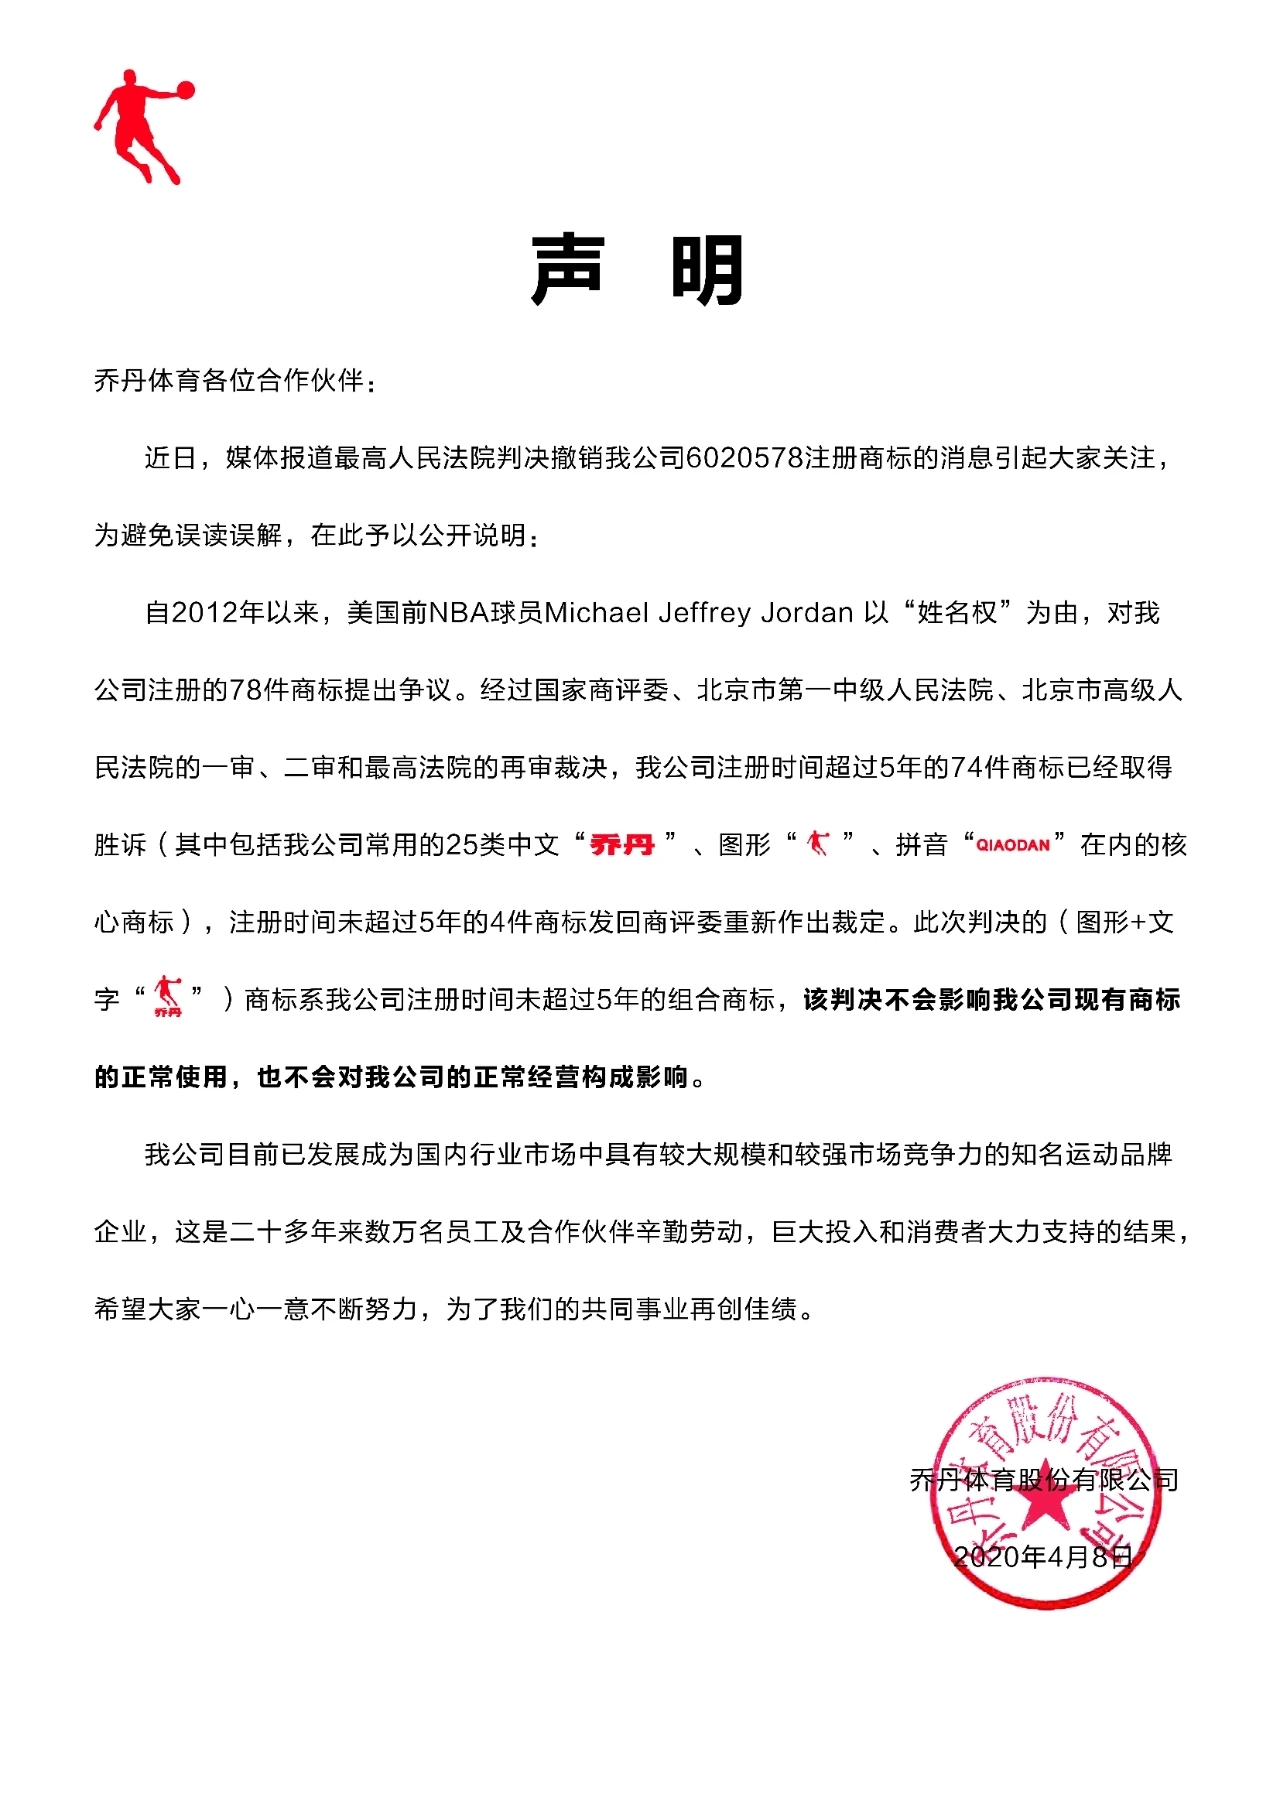 中国乔丹商标侵权案终审败诉 乔丹体育称其有